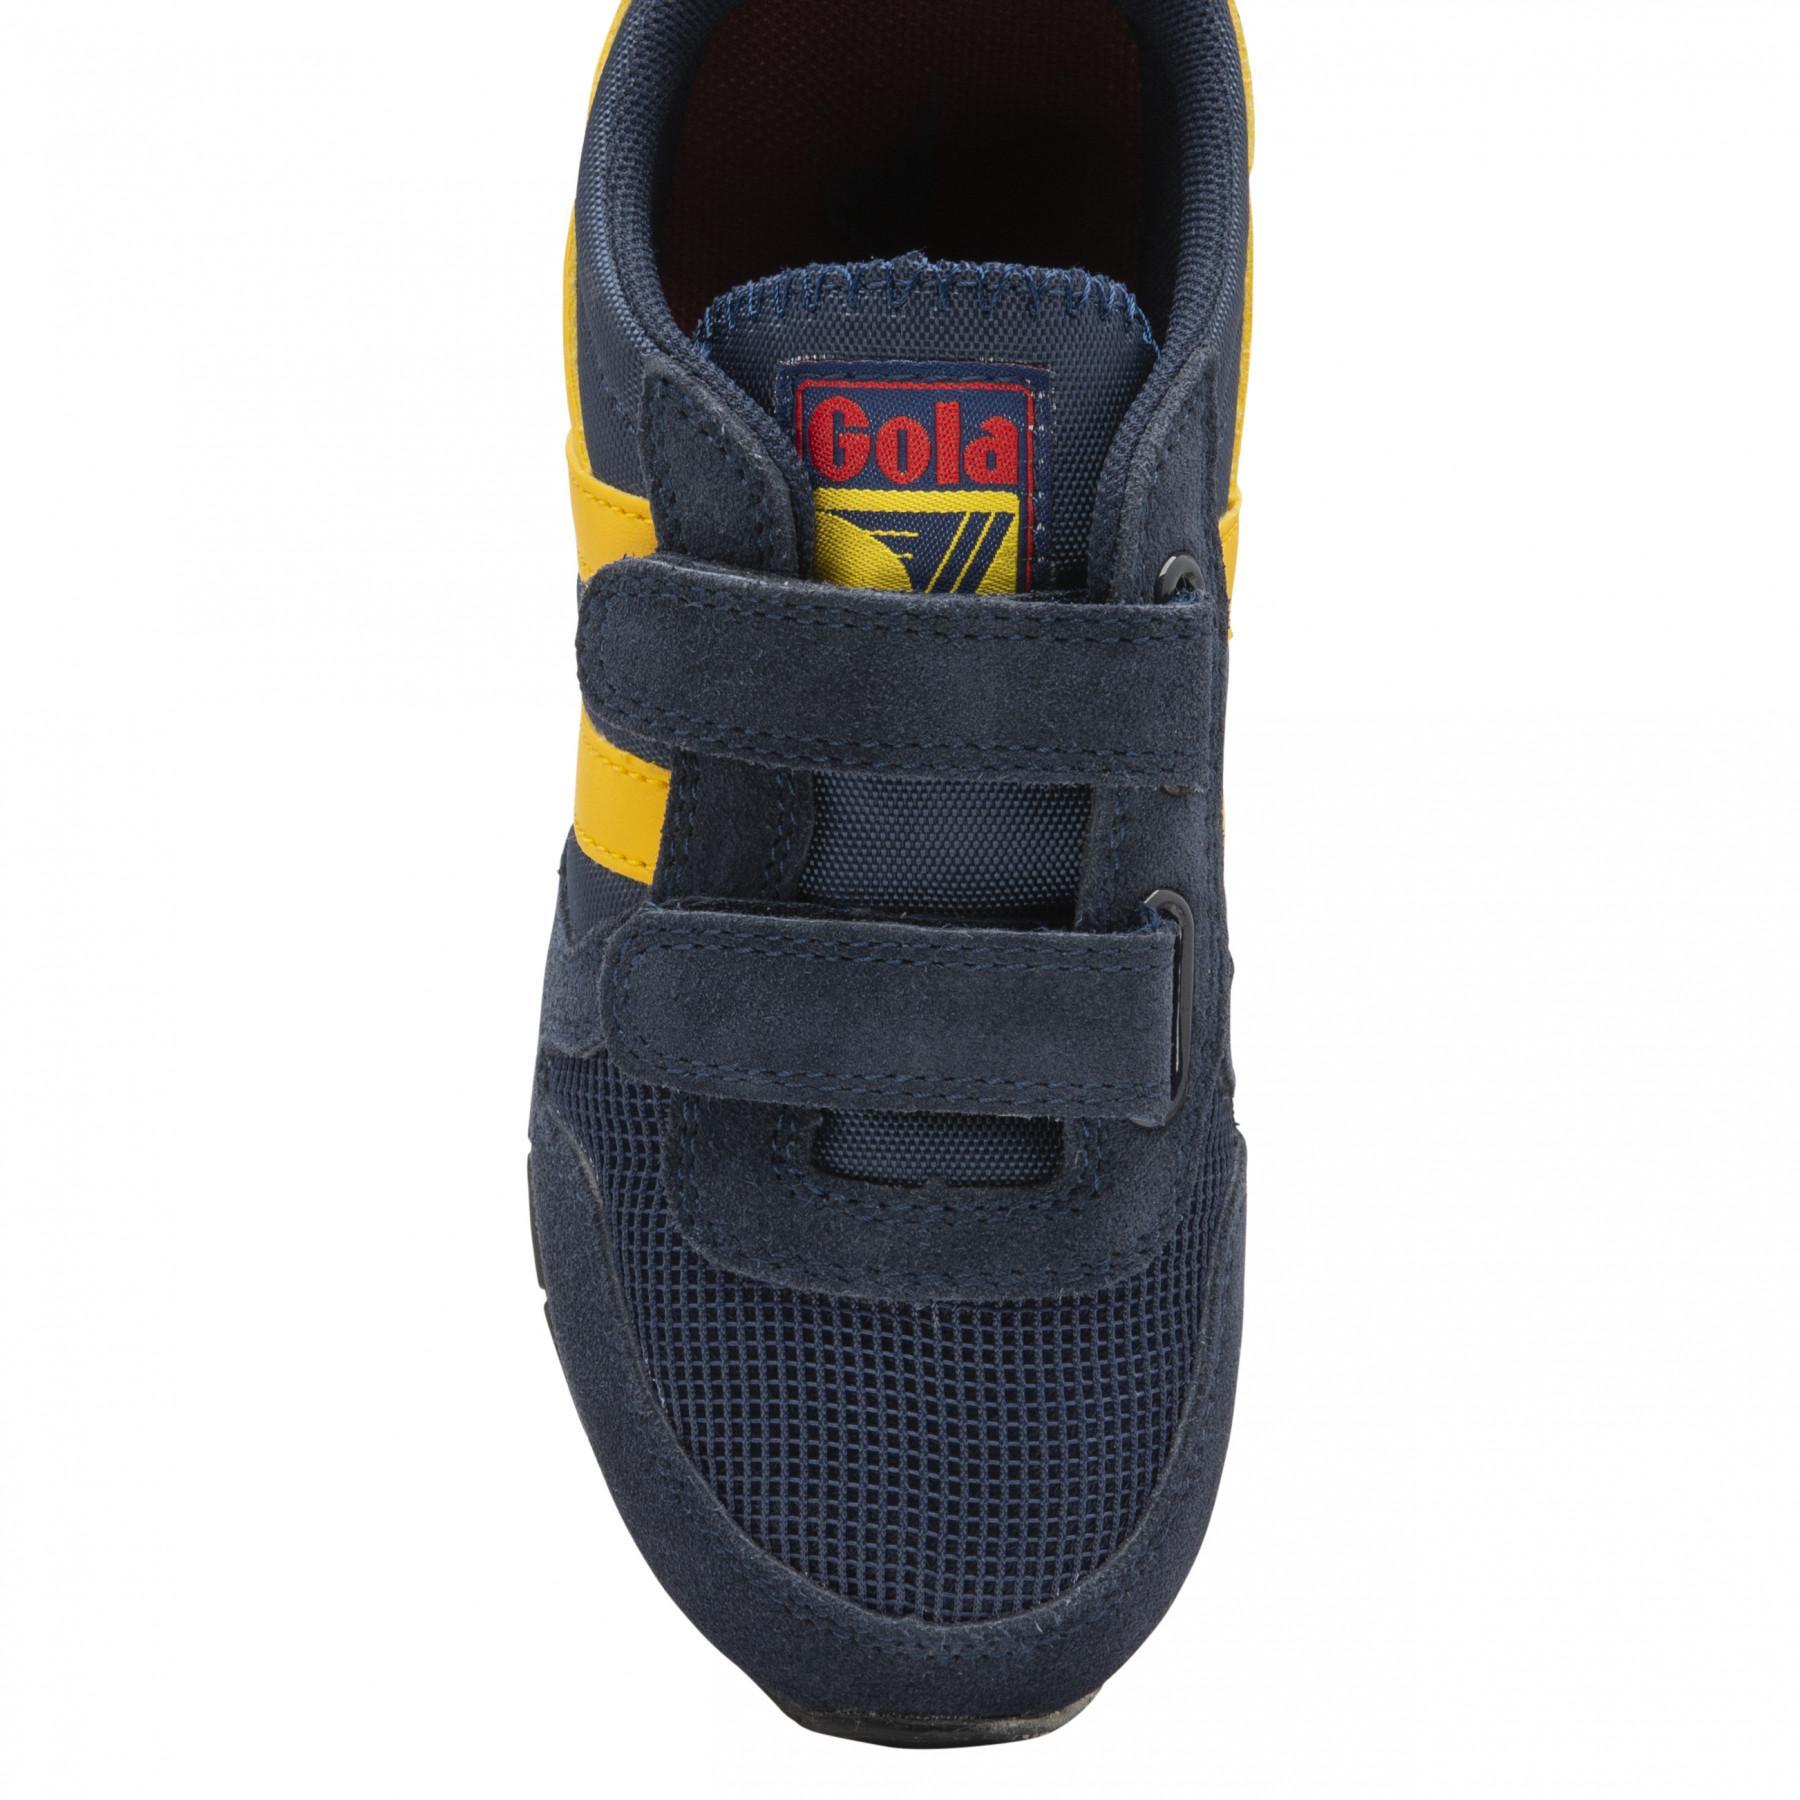 Children's sneakers Gola Daytona Velcro